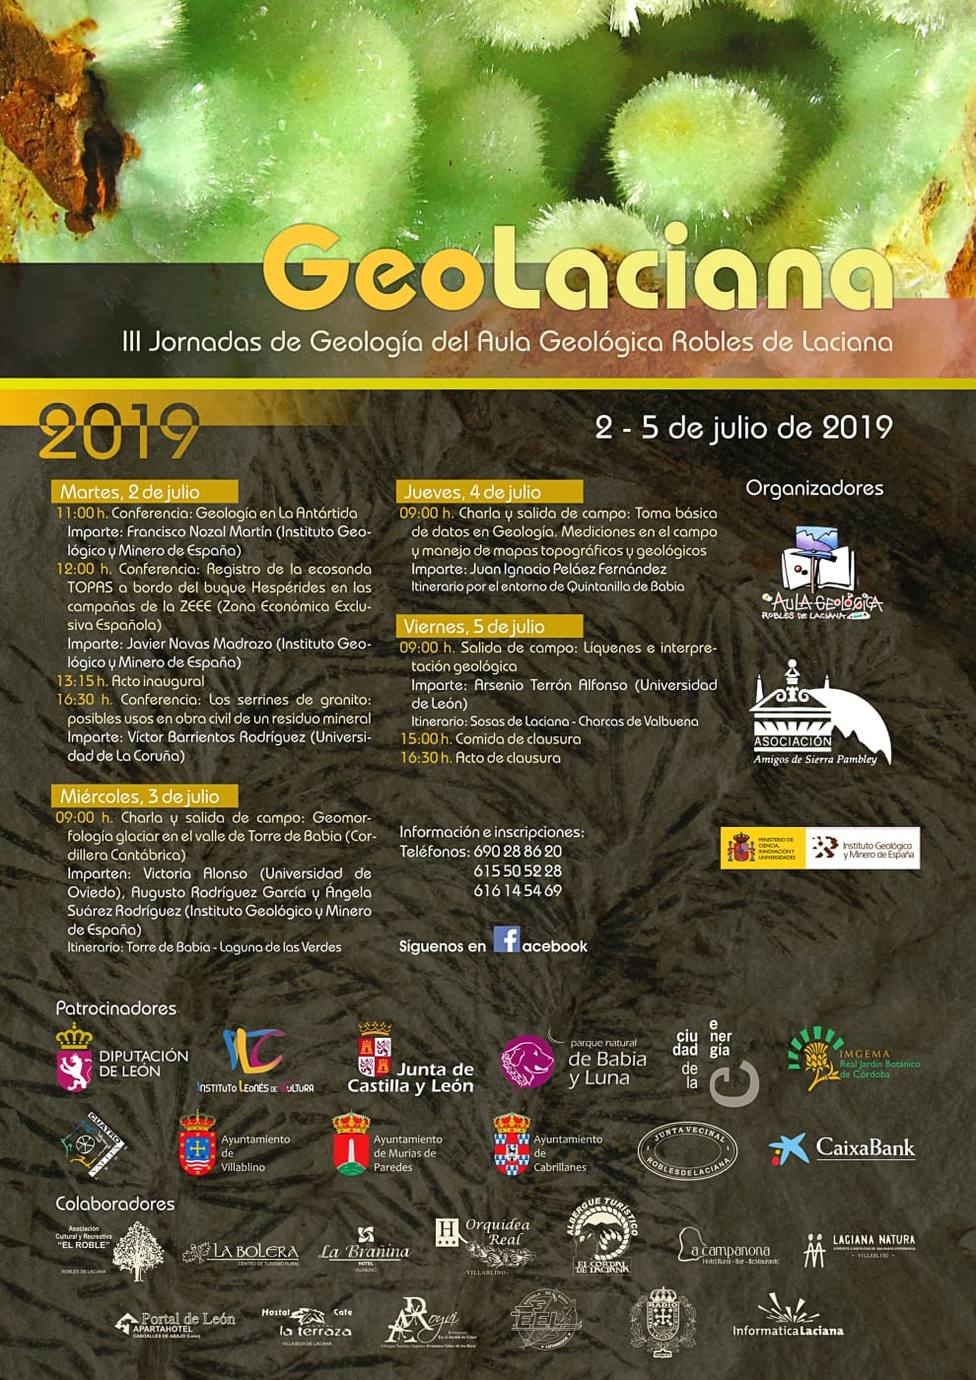 Este martes 2 de julio, comenzarán las III Jornadas de Geología: “Geolaciana”